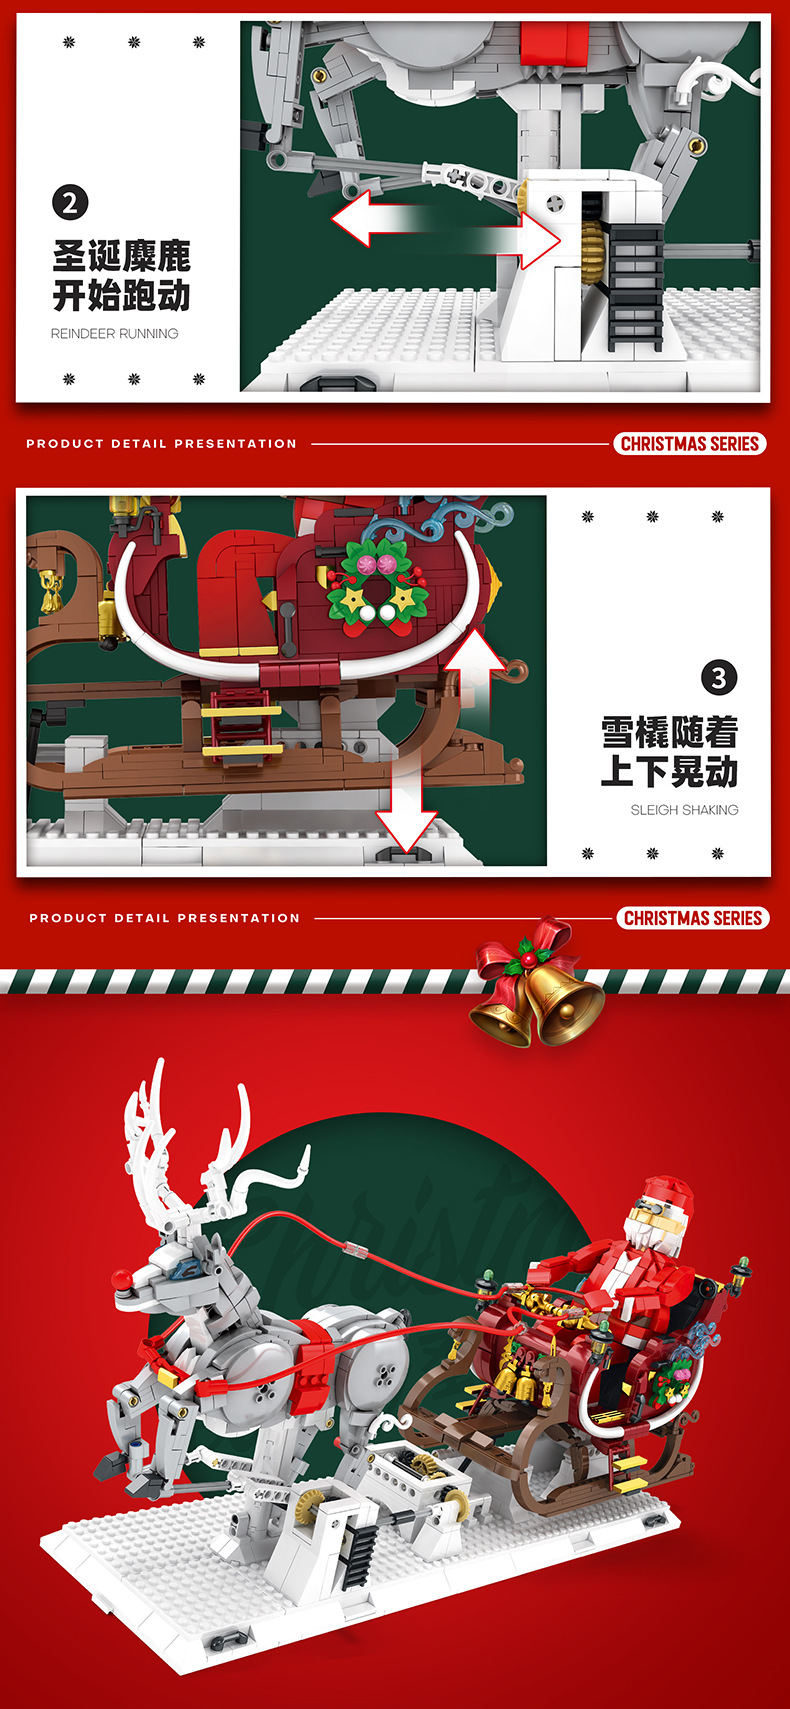 Reobrix 66002 Merry Christmas Series Weihnachtsschlitten-Block-Spielzeugset